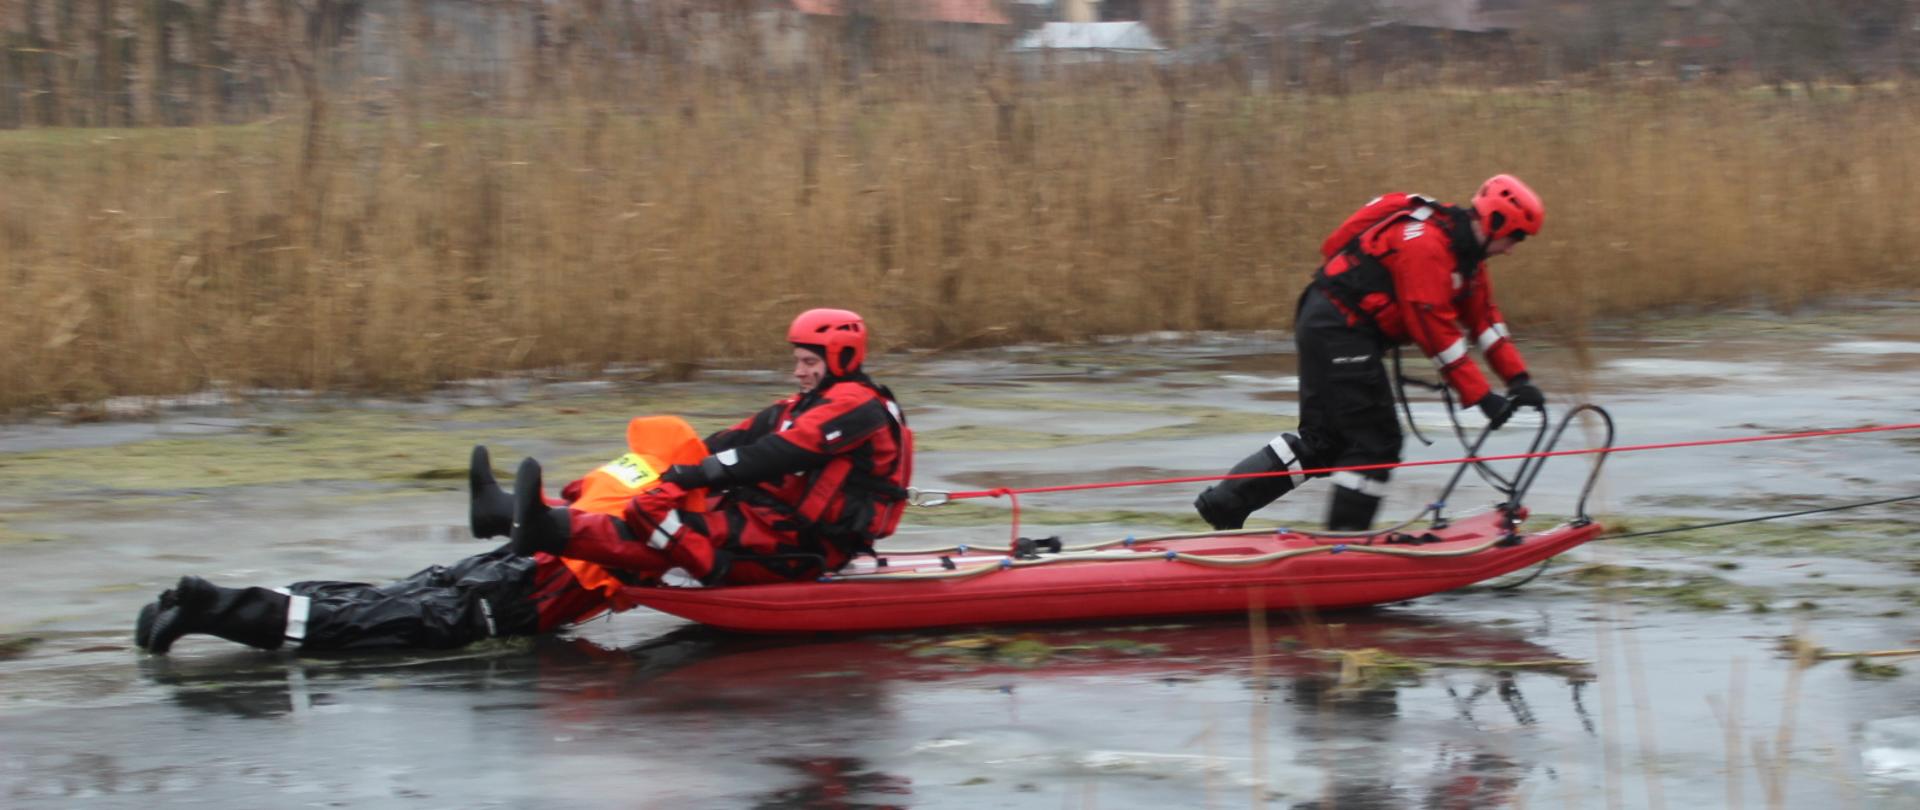 Dwóch strażaków podczas pokazów ratownictwa wodno-lodowego prezentuje metodę wydobycia poszkodowanego przy użyciu sań lodowych. Strażacy oraz pozorant ubrani są w specjalistyczne skafandry do ratownictwa wodnego.